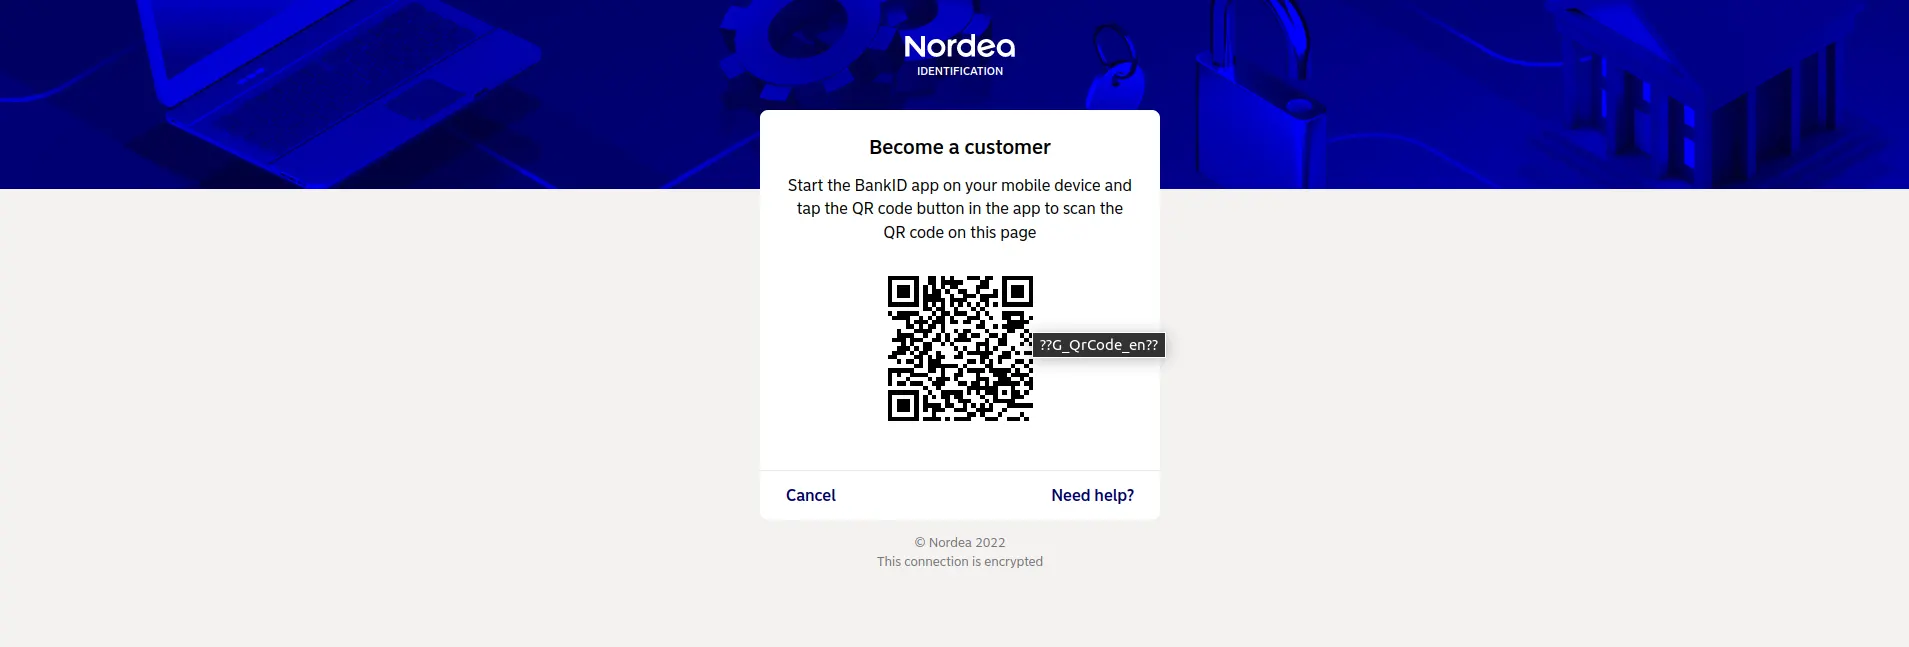 Nordea Registration Process 7